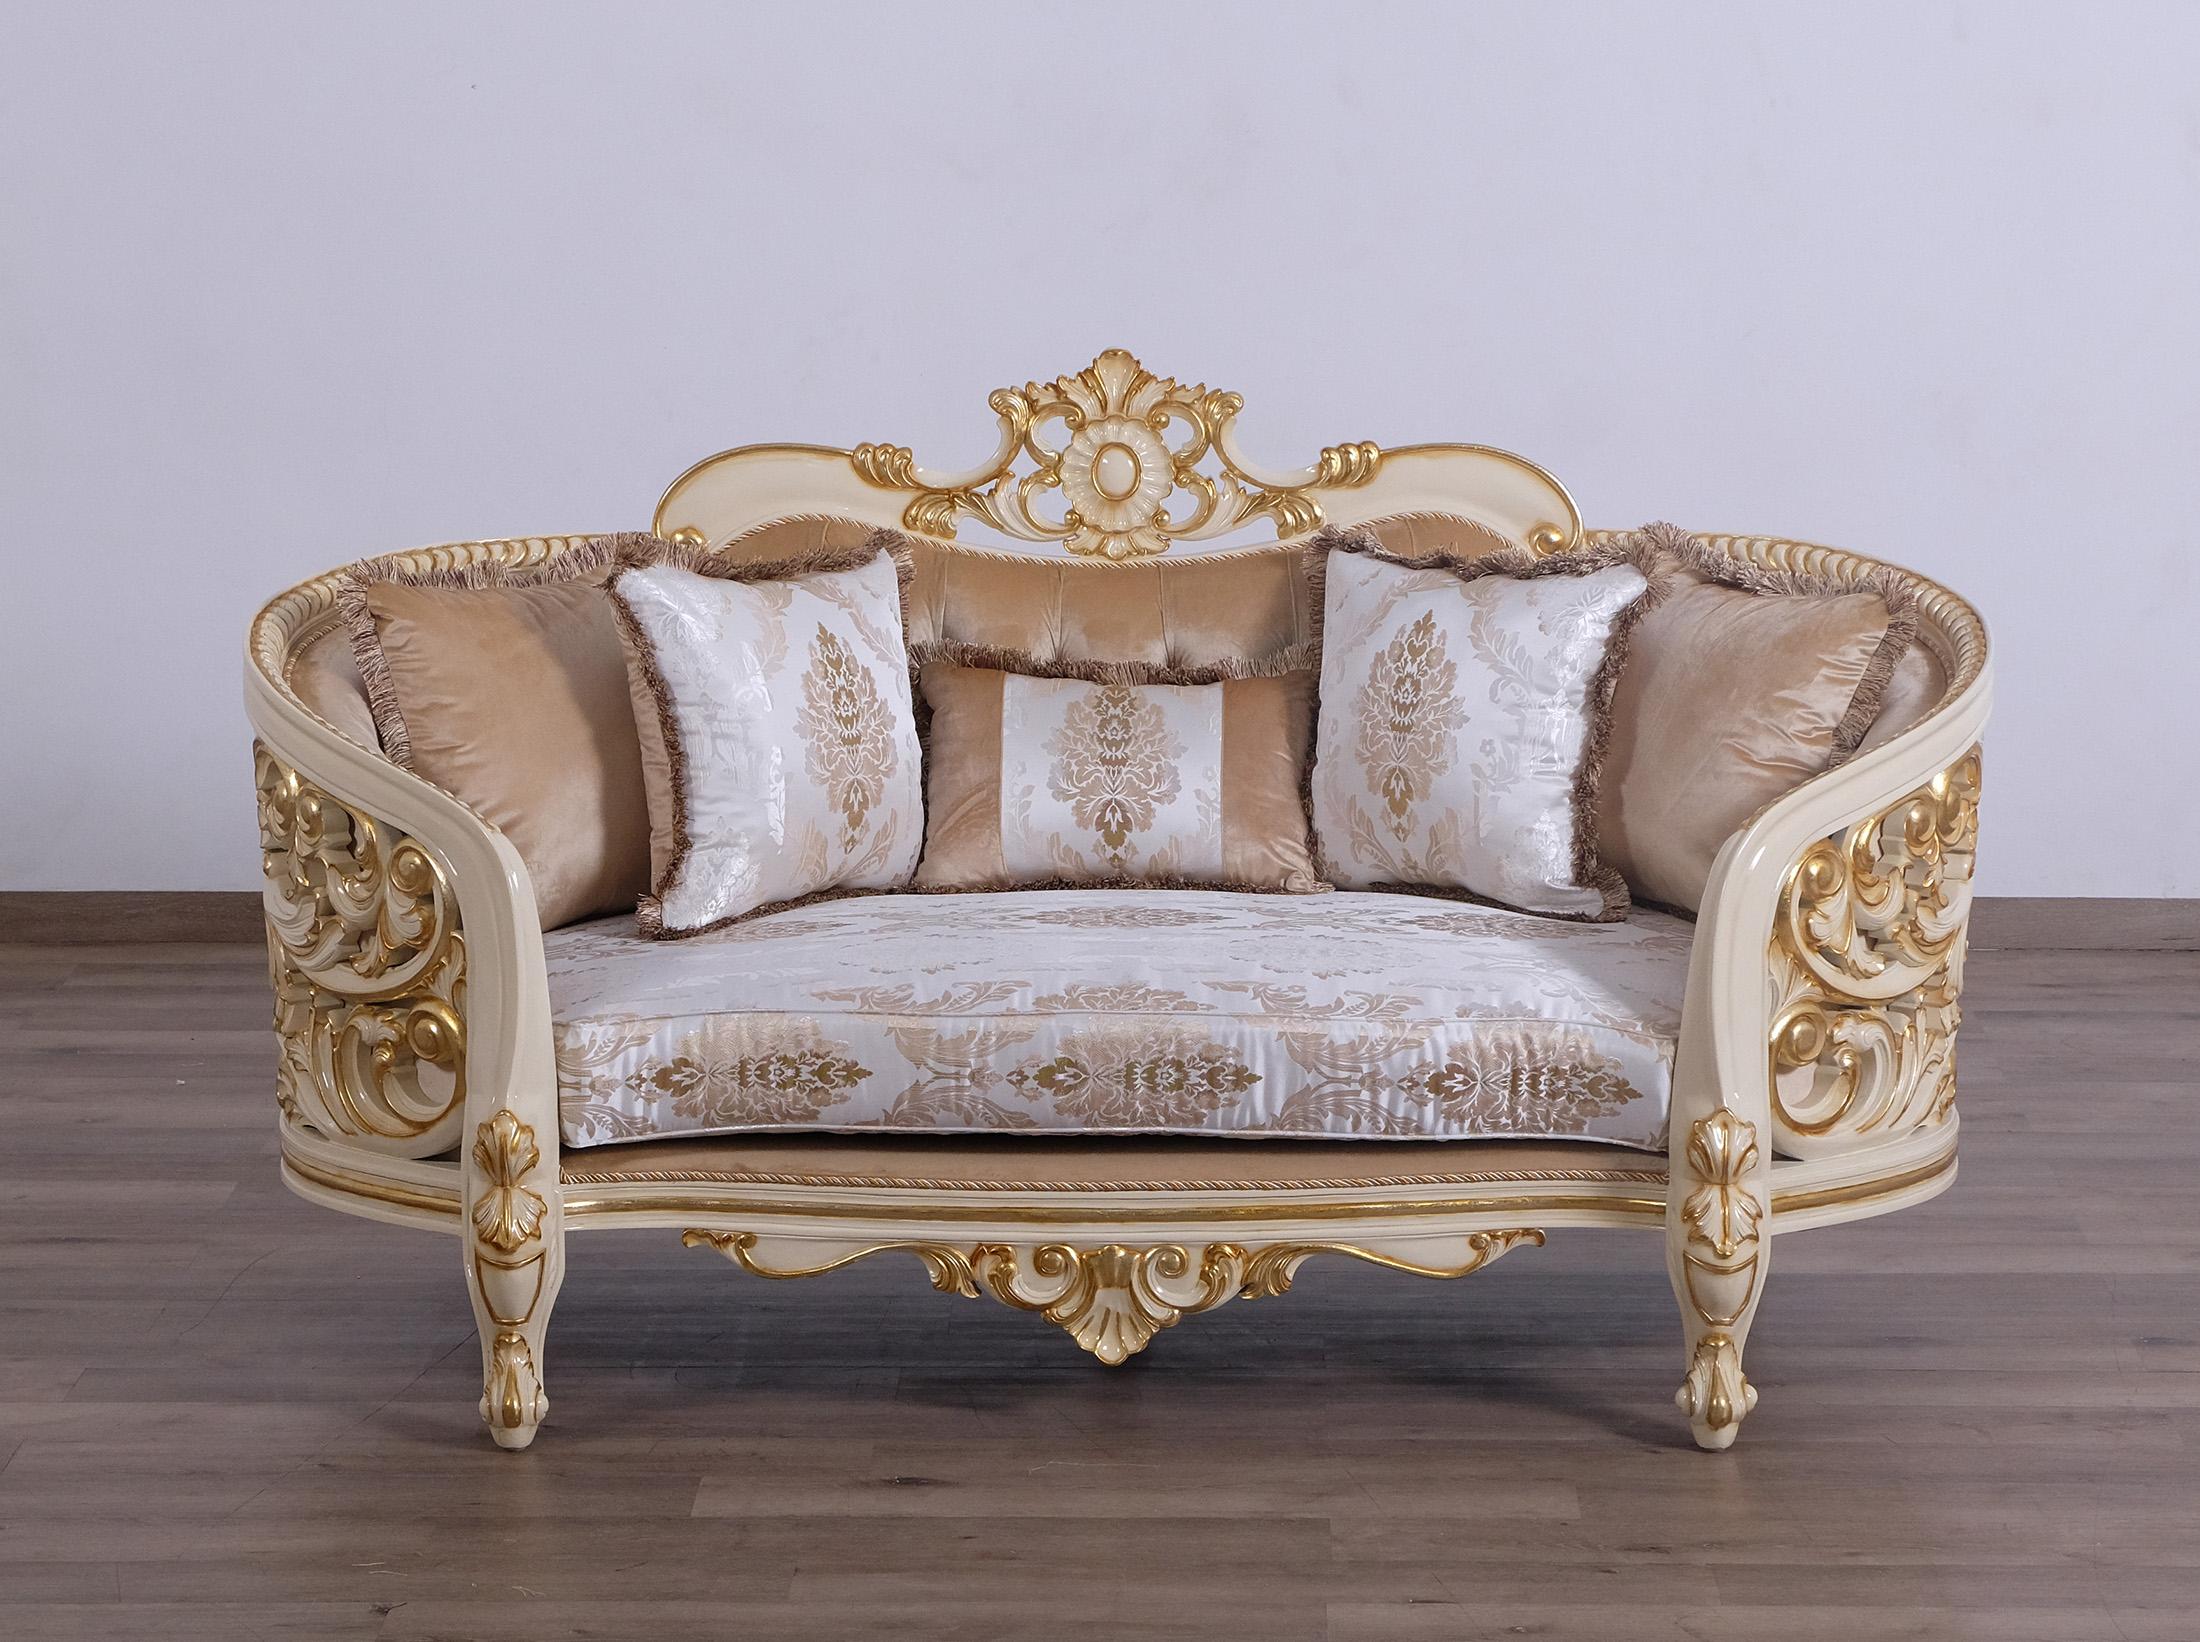 

        
EUROPEAN FURNITURE BELLAGIO Sofa Set Antique/Gold/Beige Fabric 663701289763
